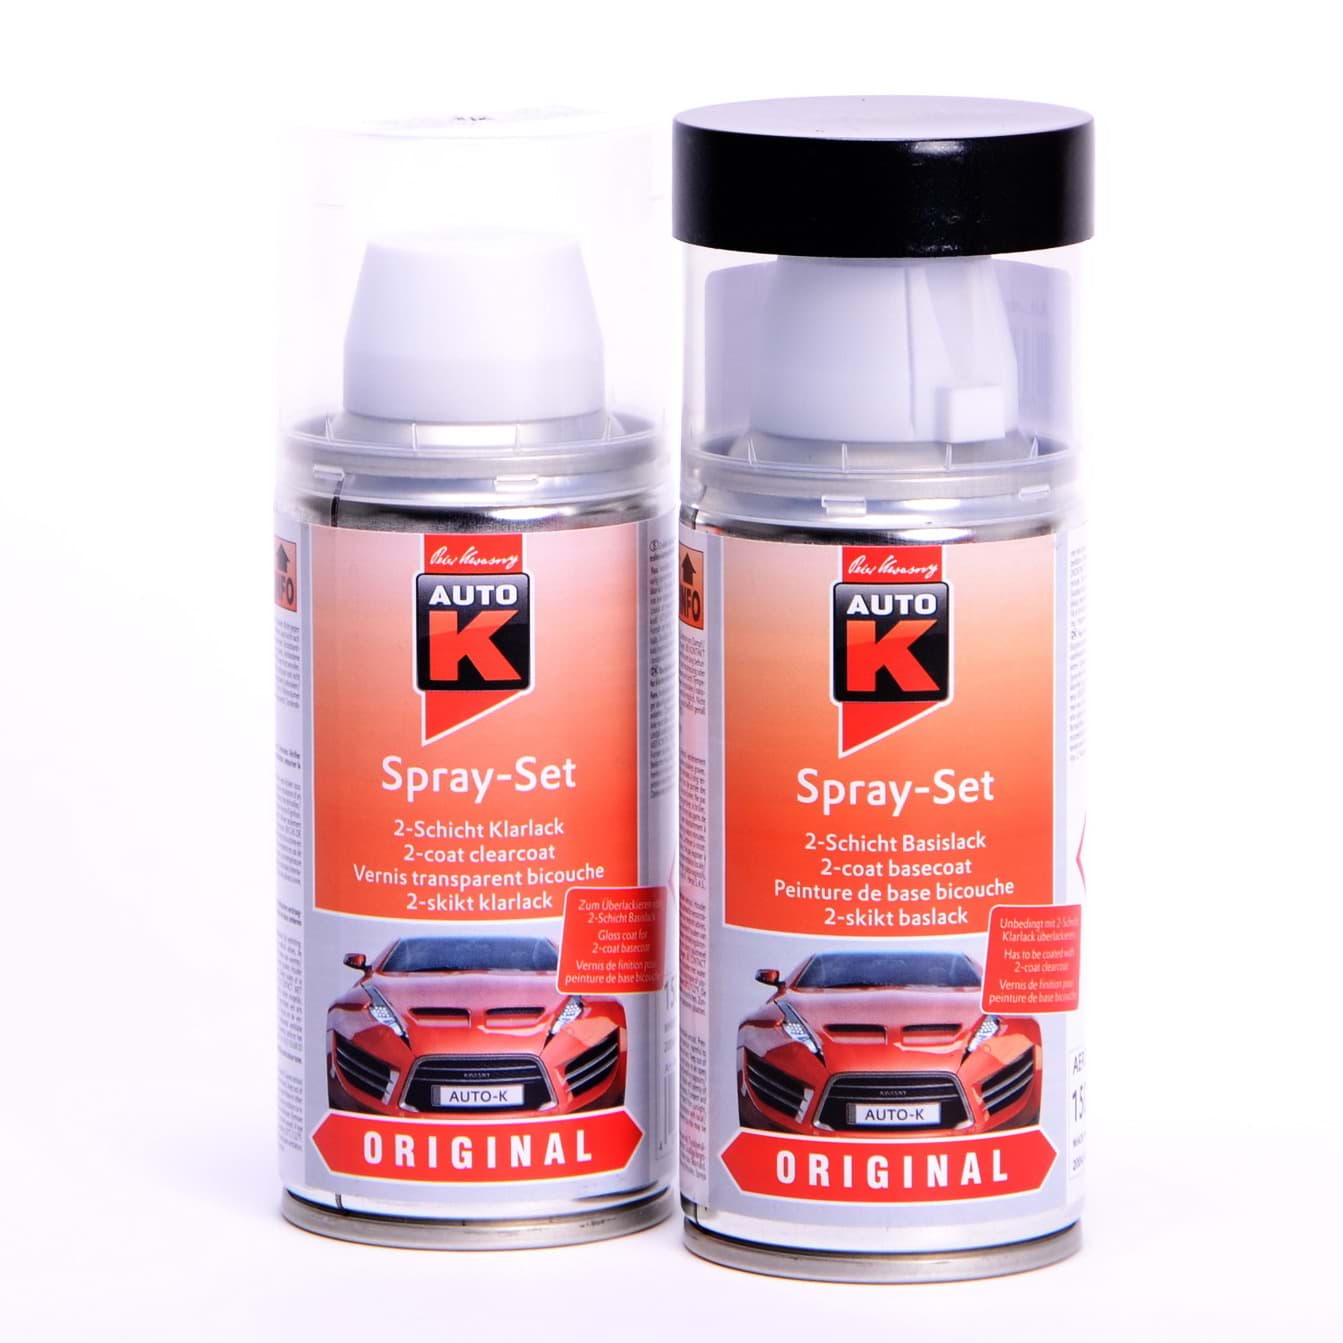 Afbeelding van Auto-K Spray-Set Autolack für Opel 266 Novaschwarz met 21361